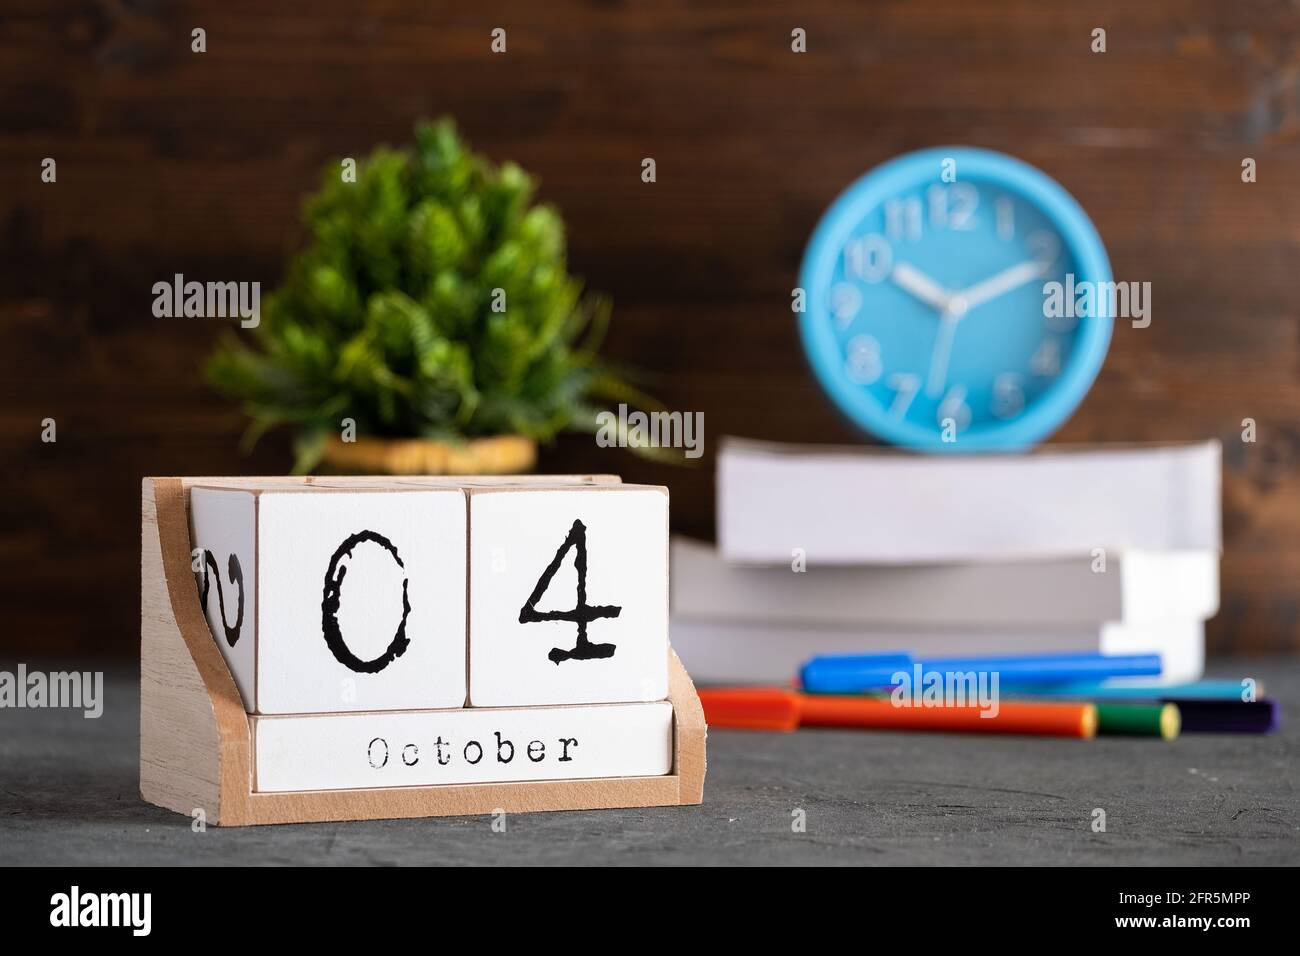 Le 04 octobre. Octobre 04 calendrier cube en bois avec objets flous sur fond. Banque D'Images